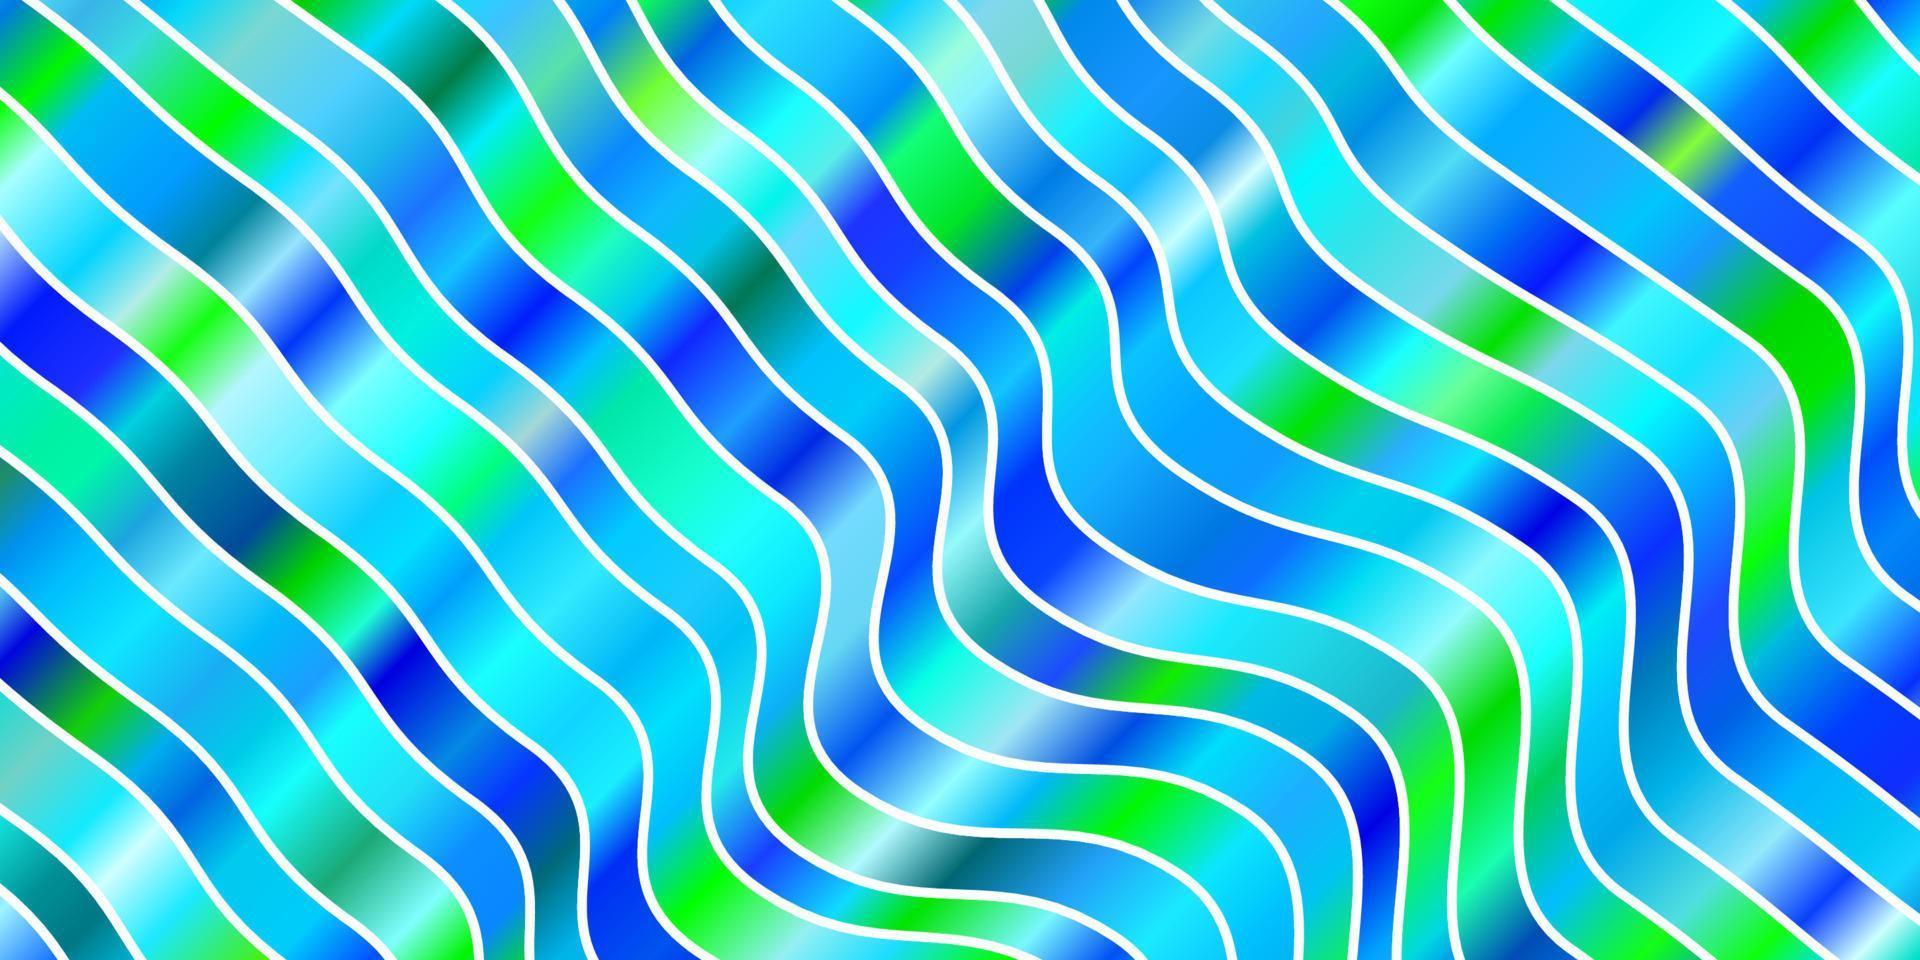 fundo vector azul e verde claro com linhas dobradas.